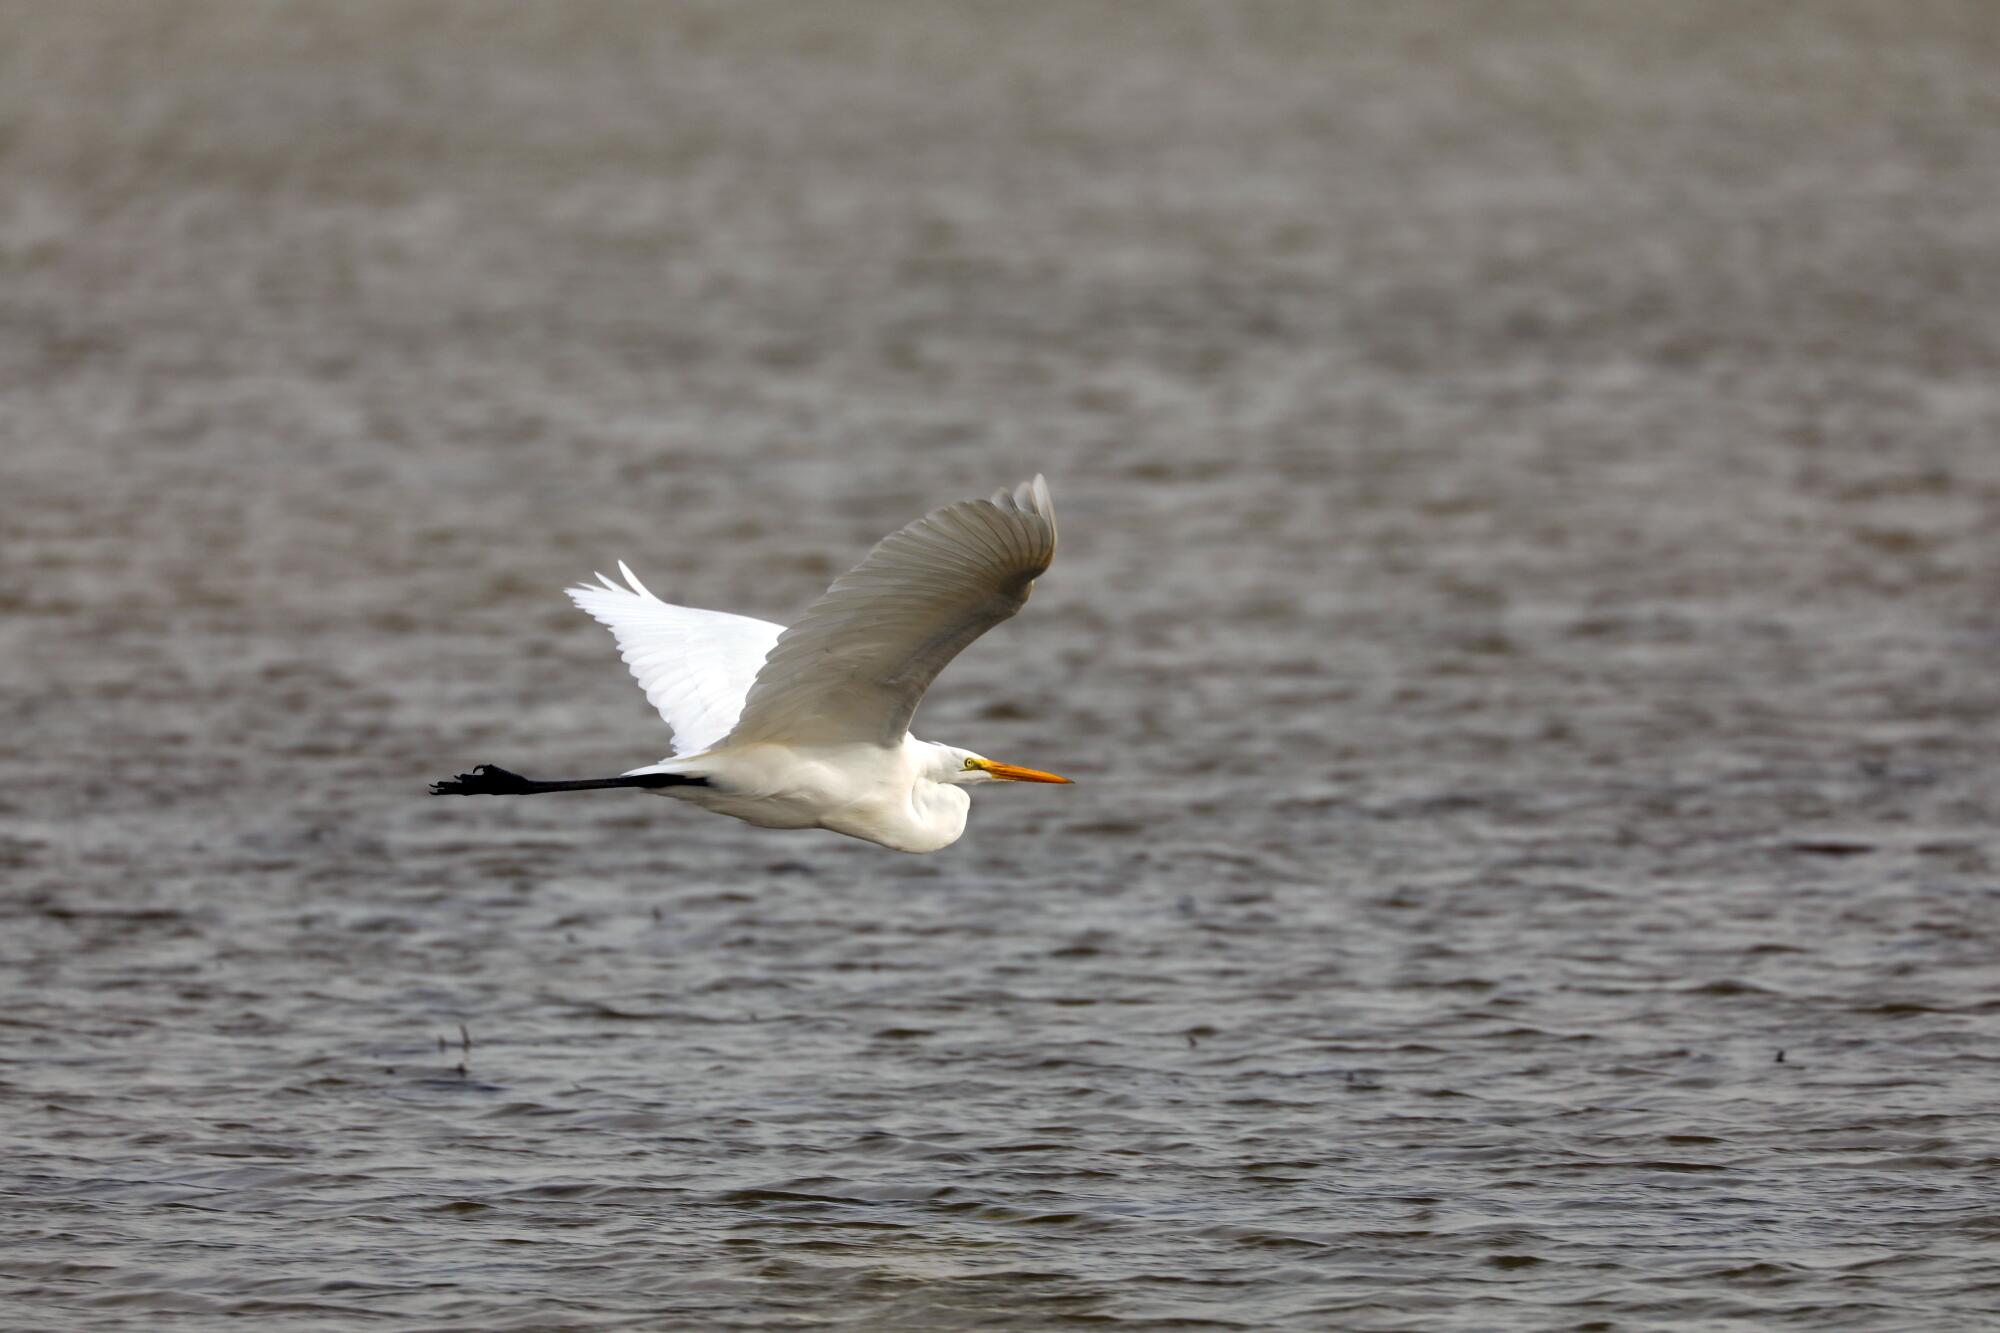 A white bird flies over water.